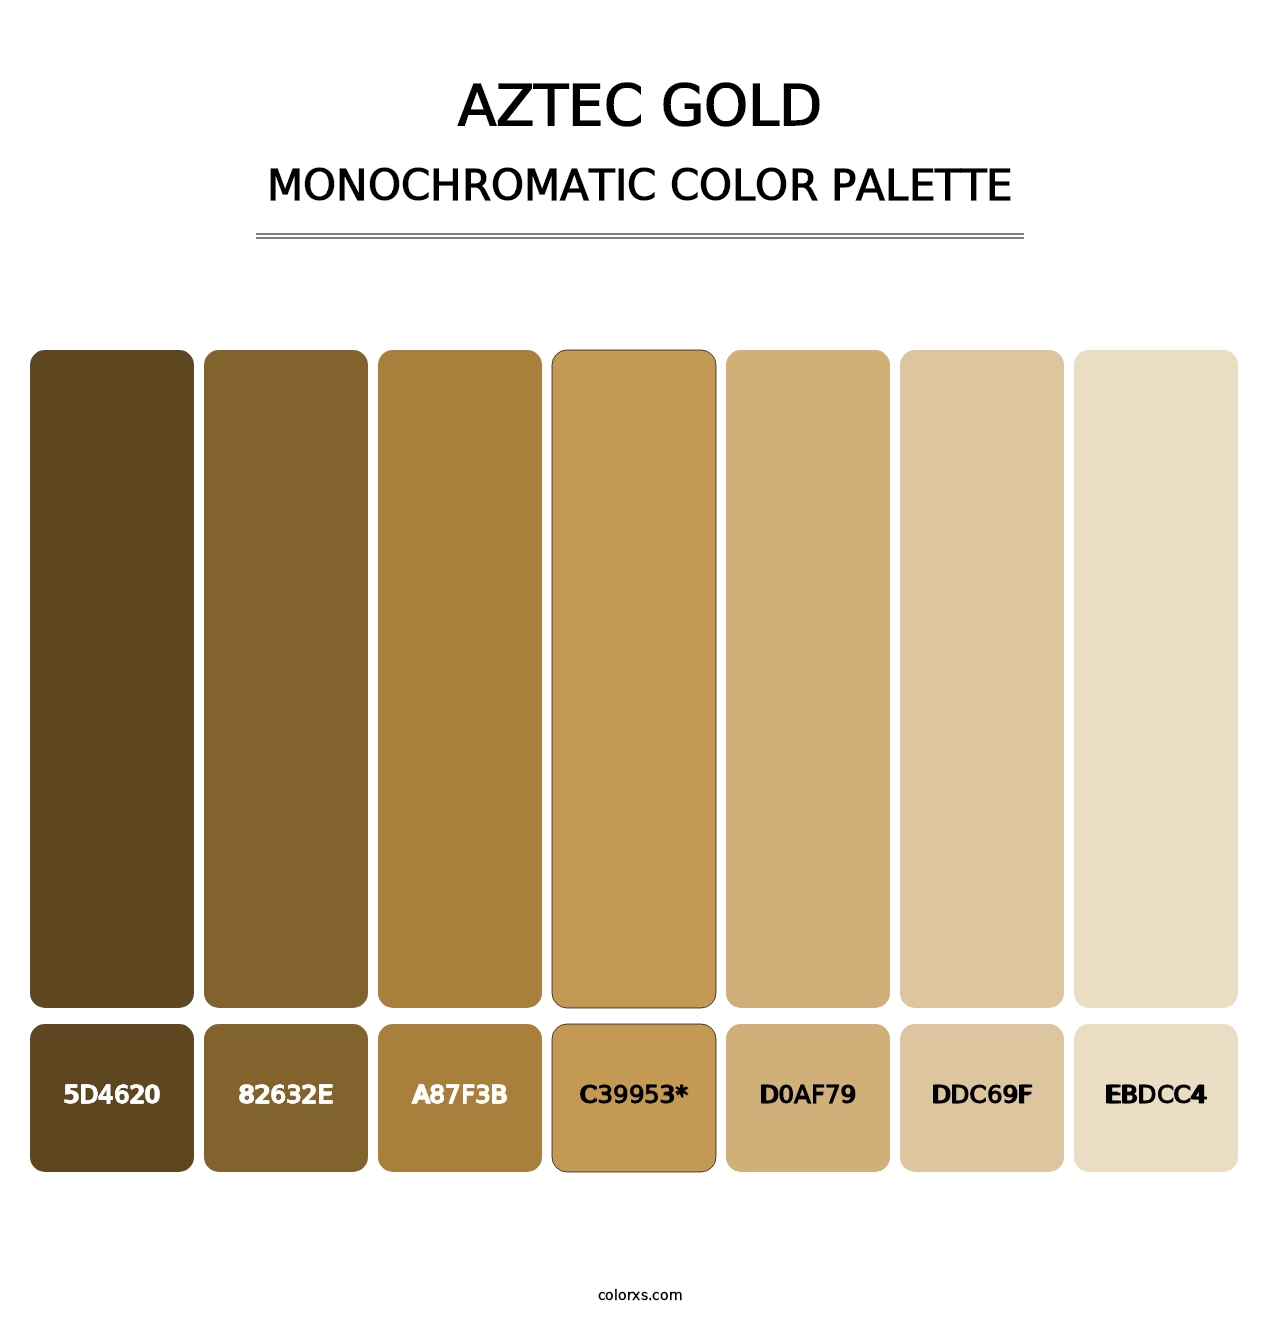 Aztec Gold - Monochromatic Color Palette